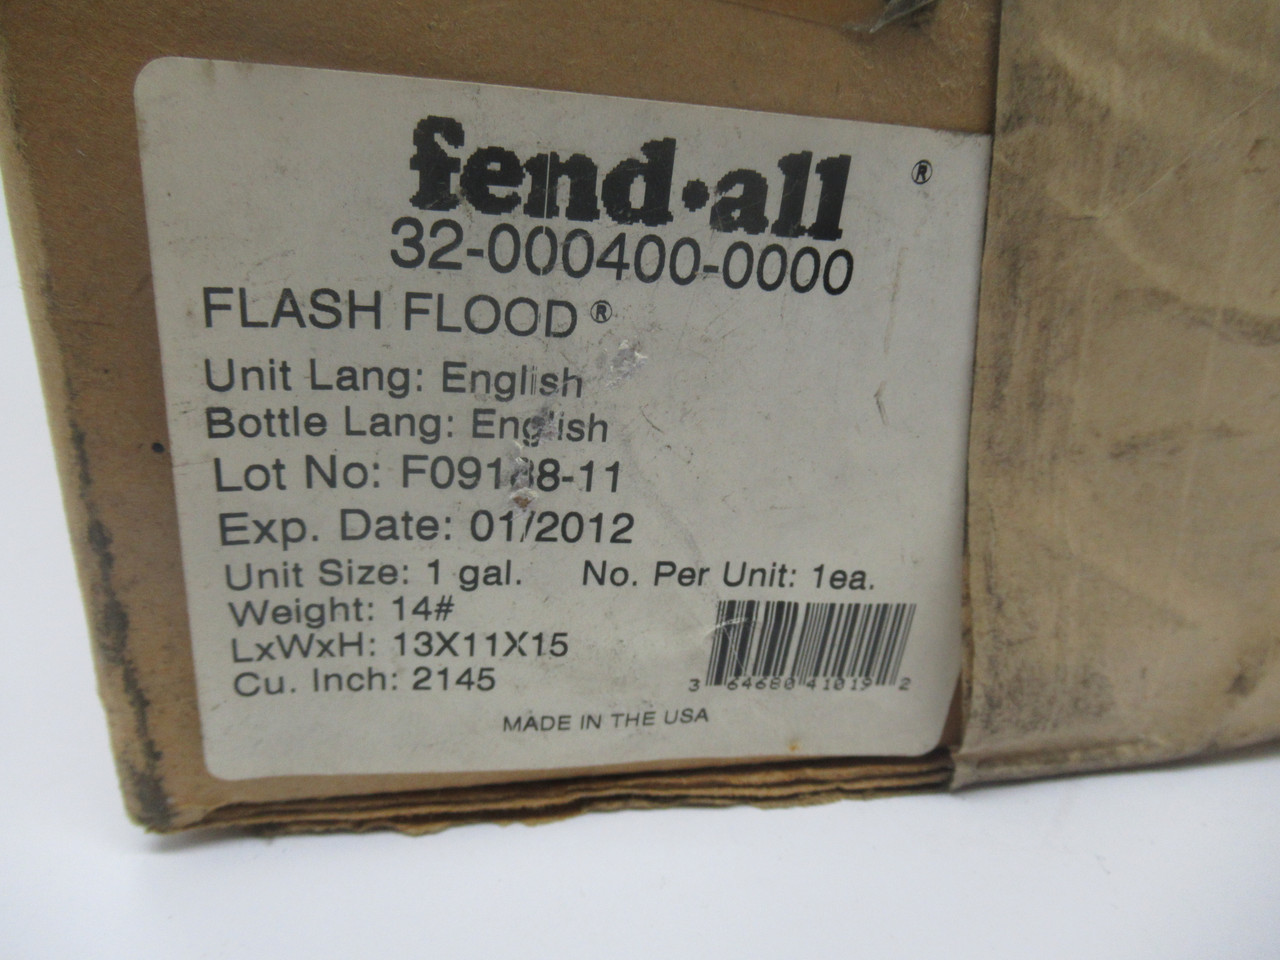 Fendall 32-000400-0000 Flash Flood Emergency Eye Was Station *Shelf Wear* NEW